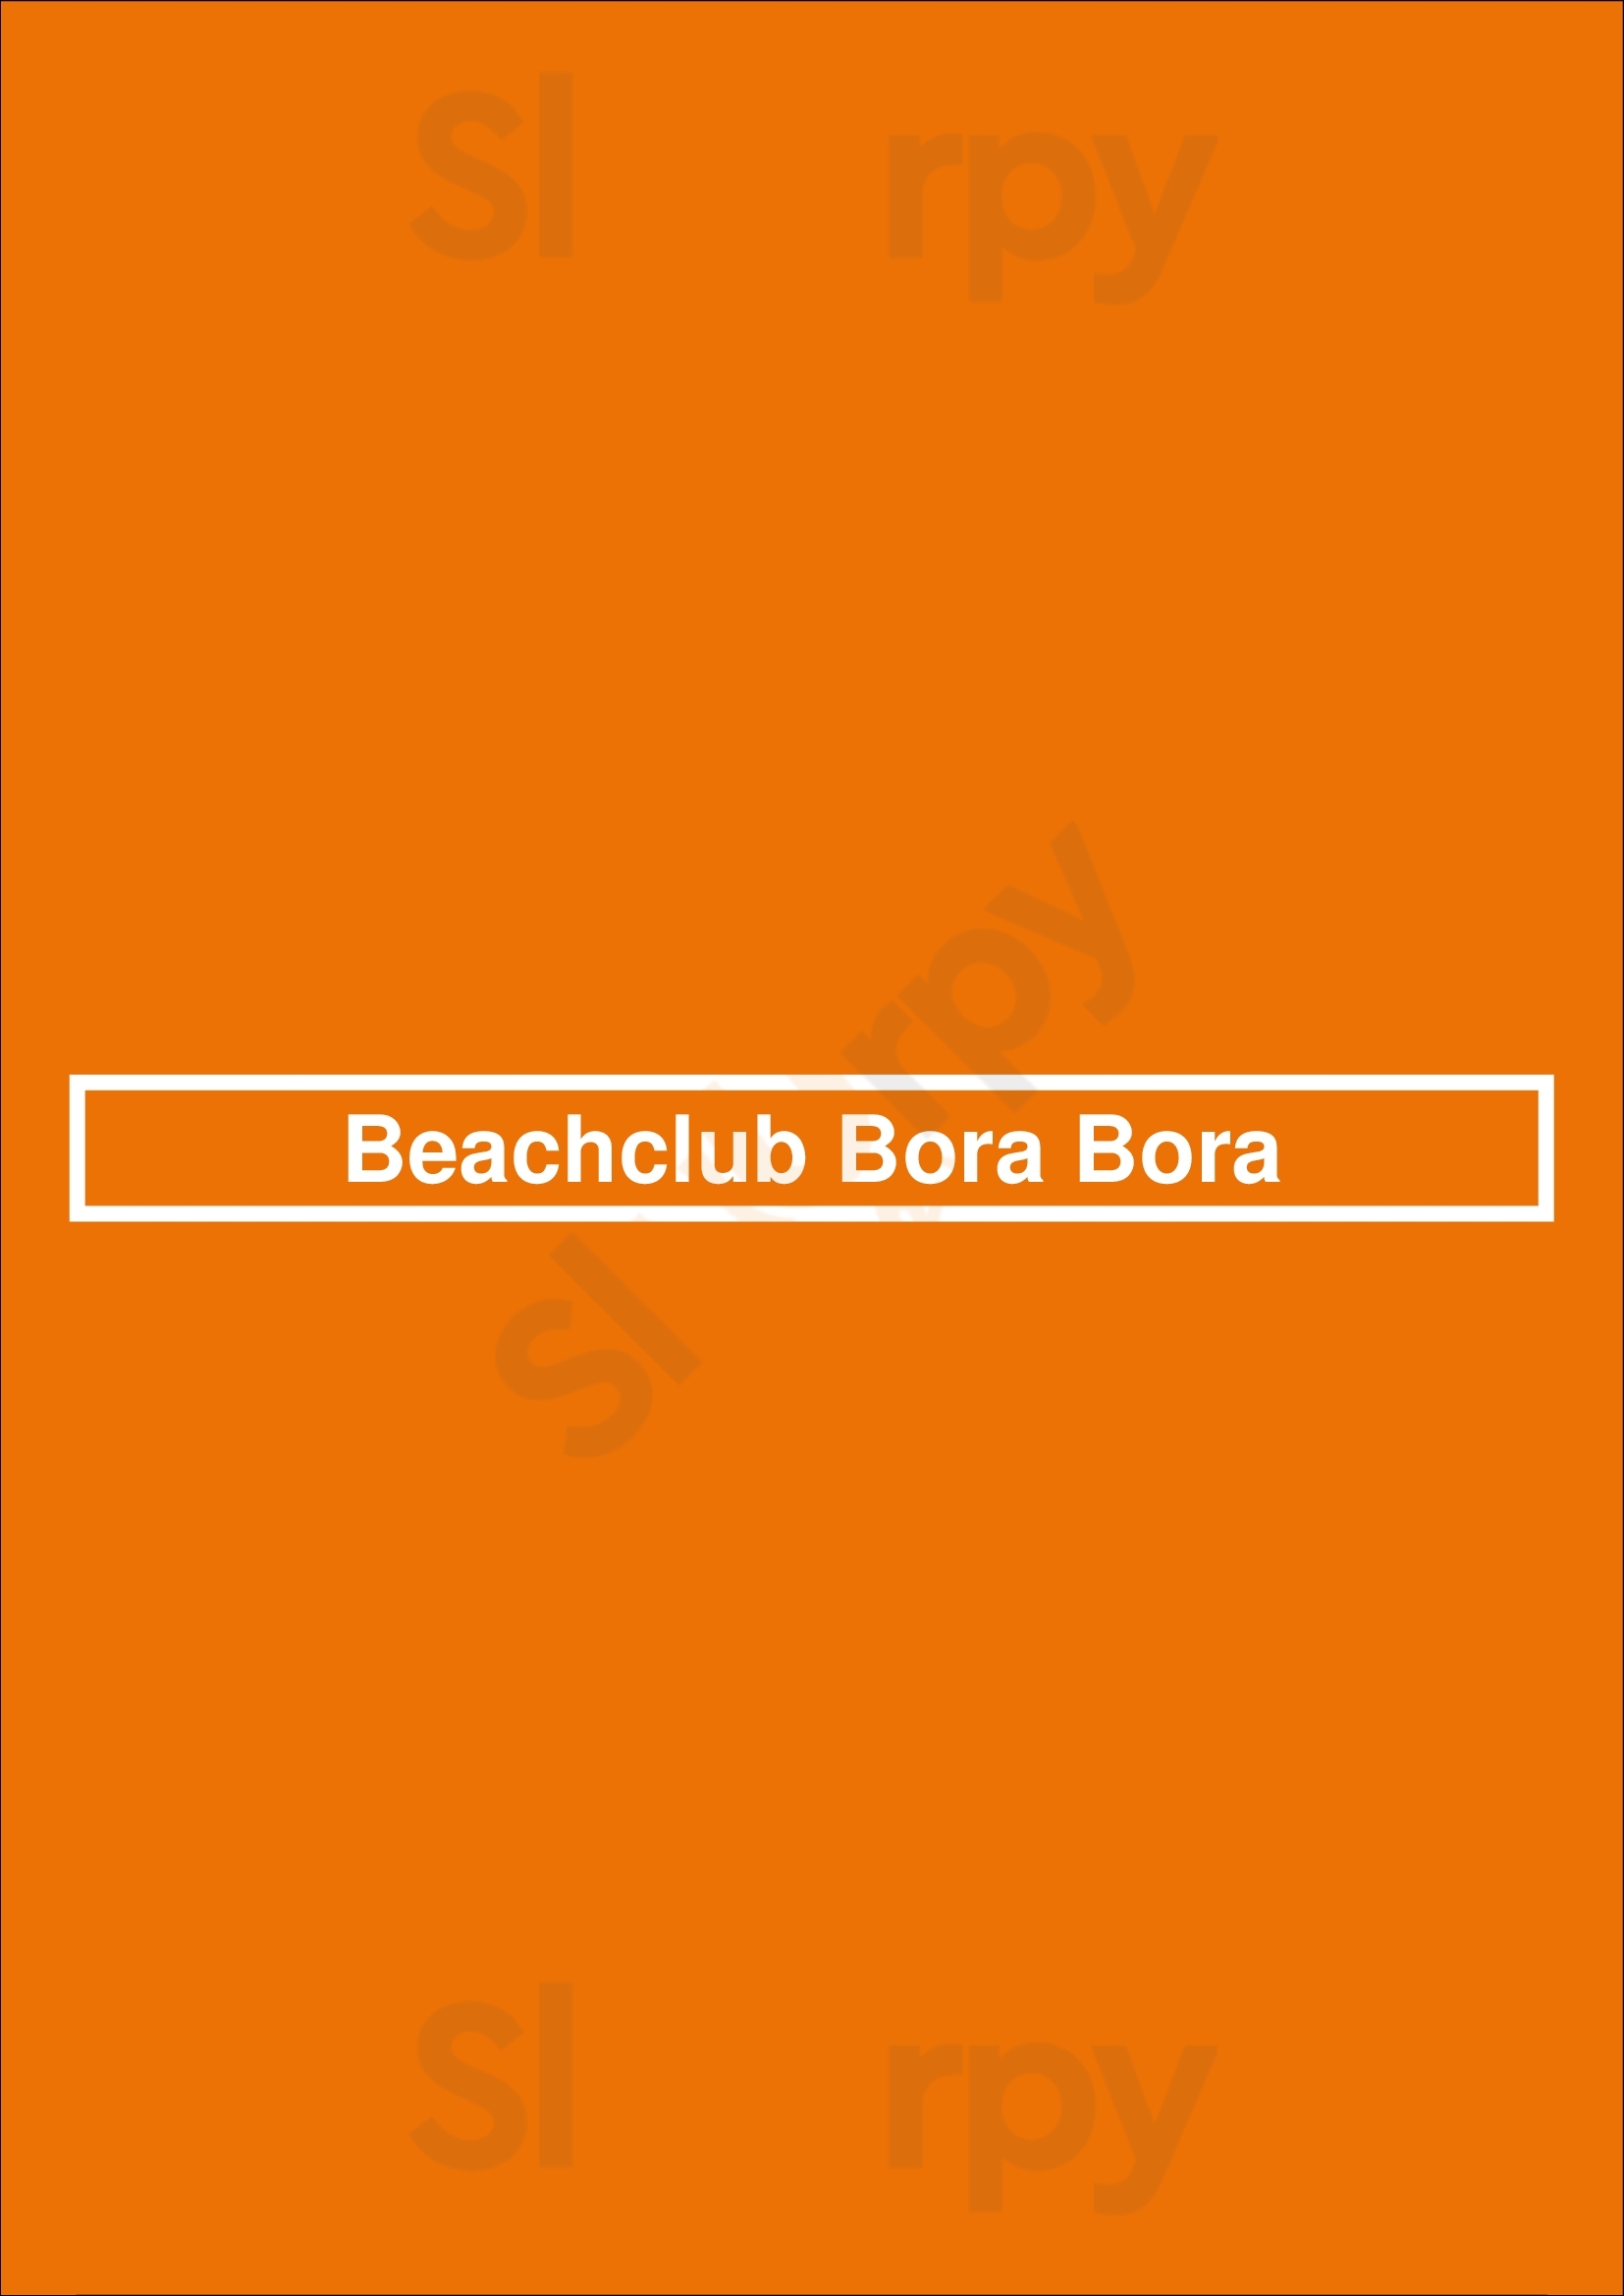 Beachclub Bora Bora Scheveningen Menu - 1